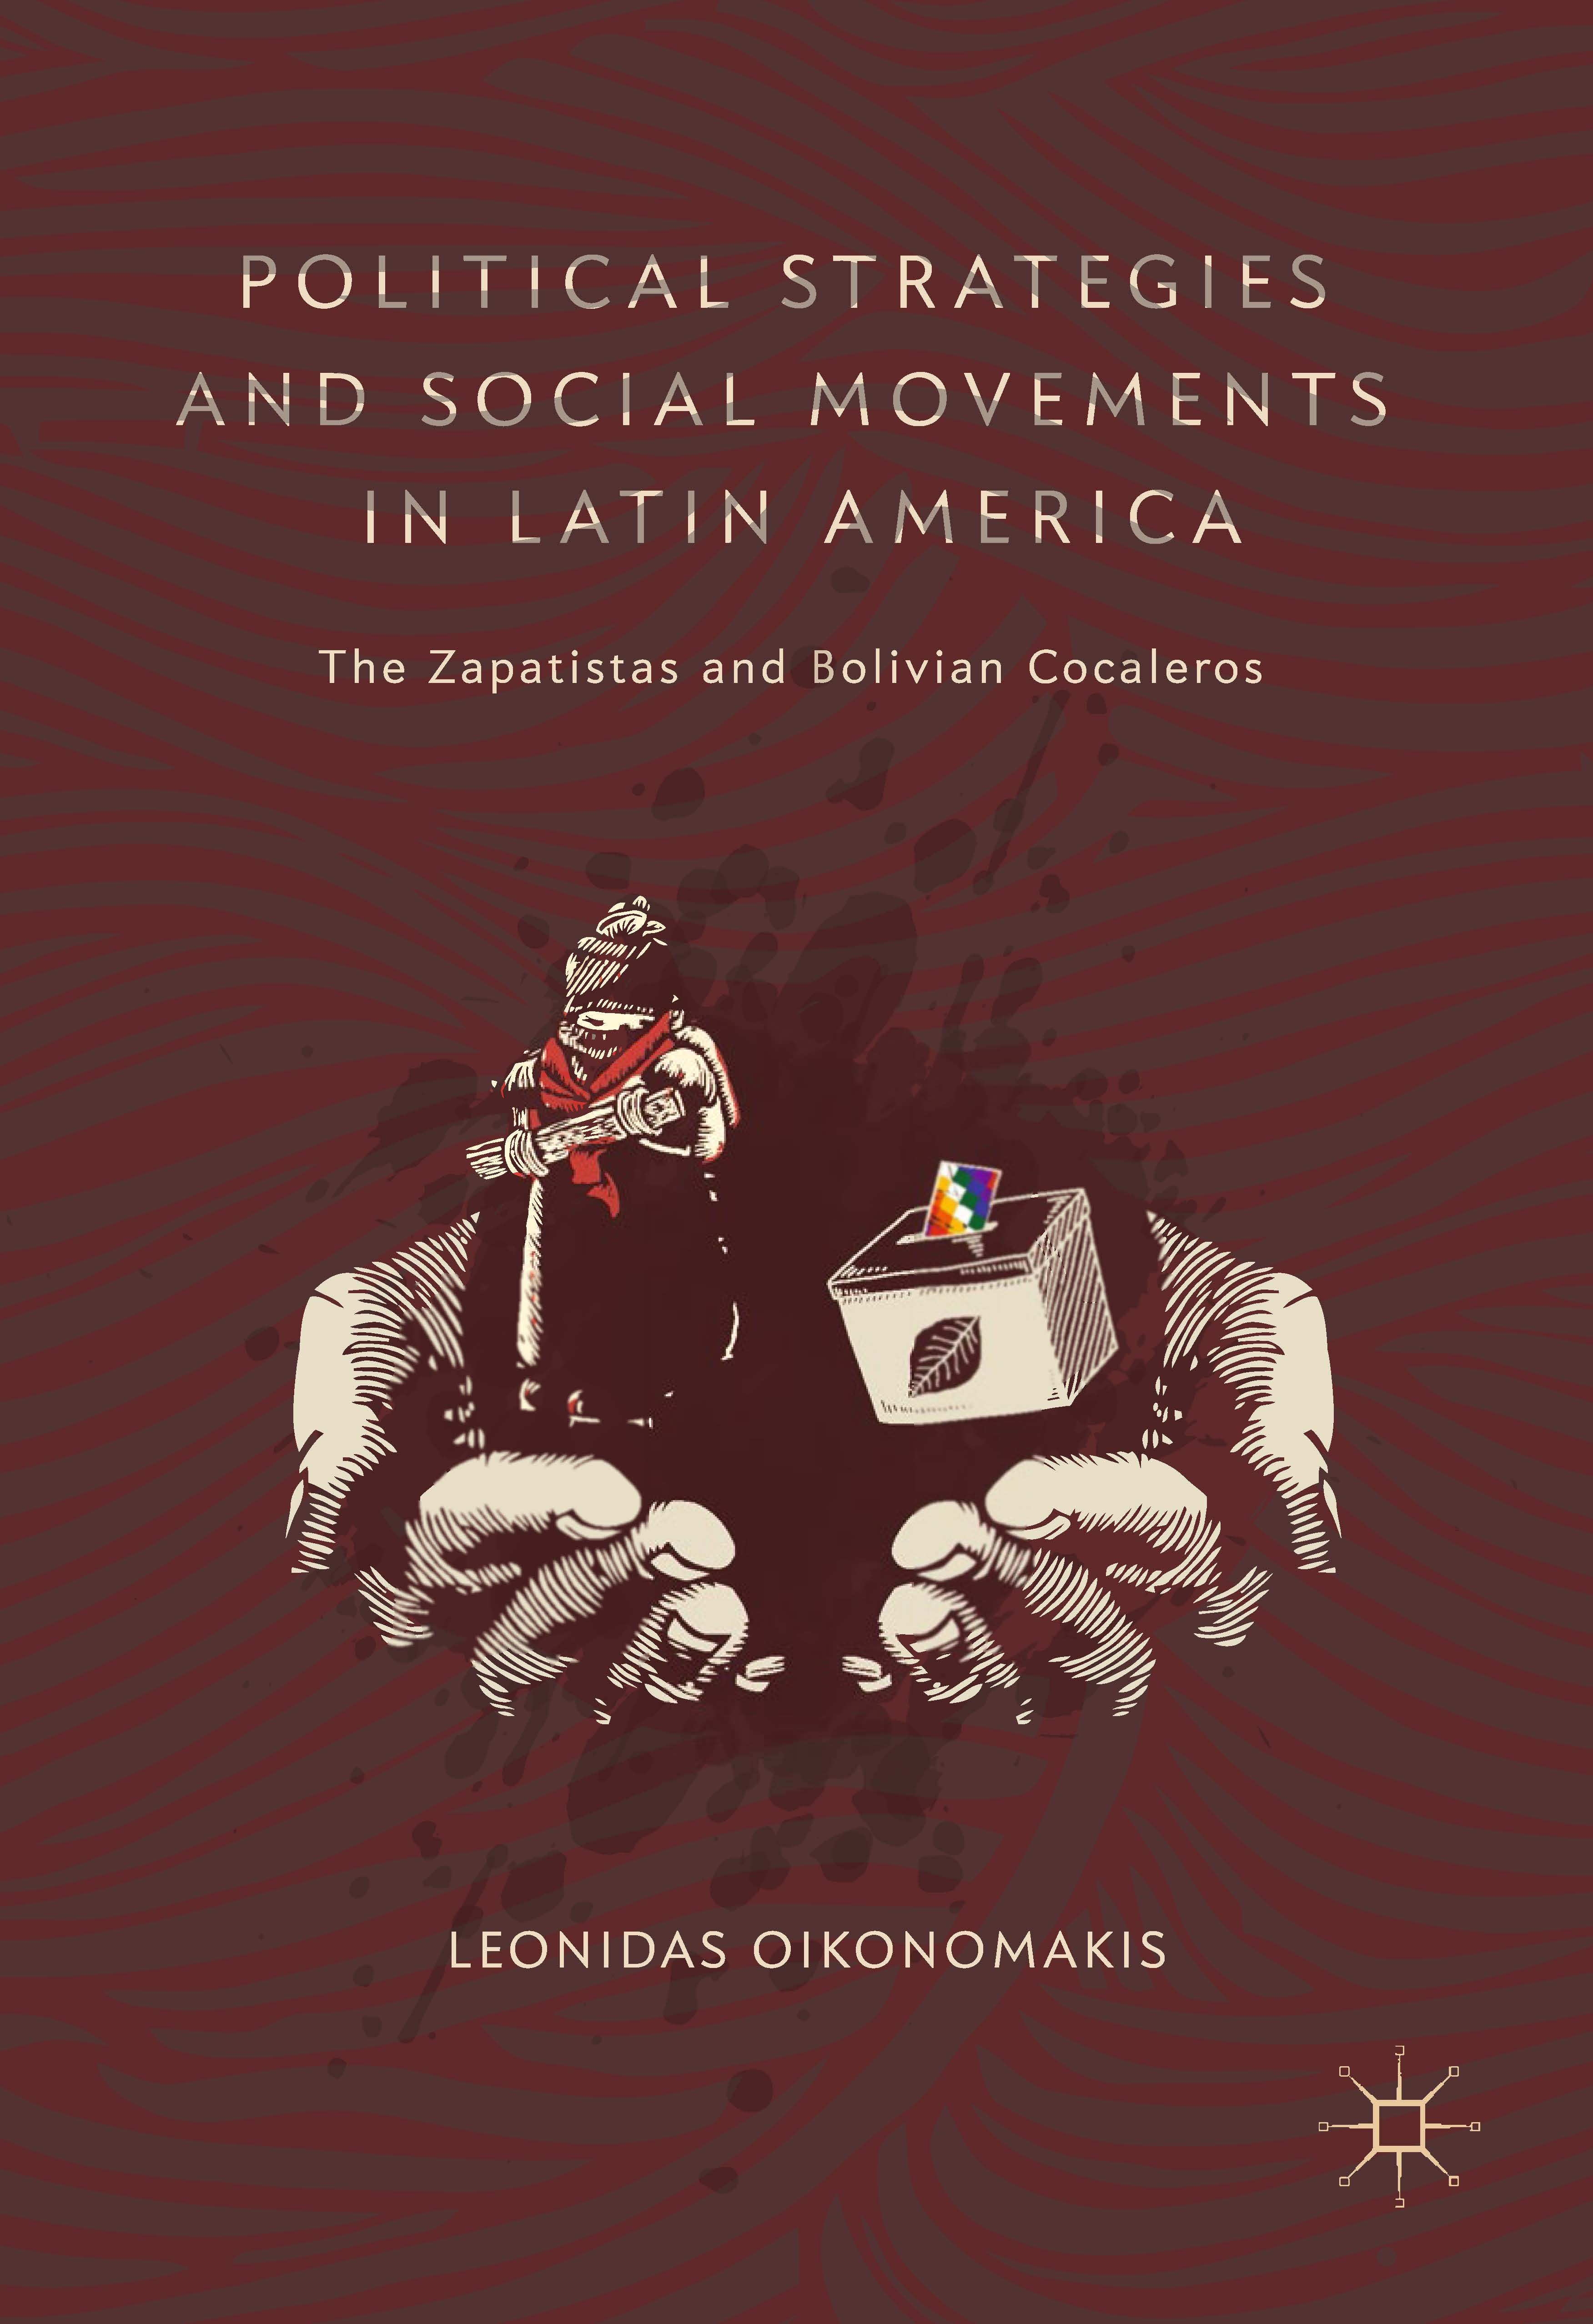 页面提取自－2019_Book_Political Strategies and Social Movements in Latin America.jpg